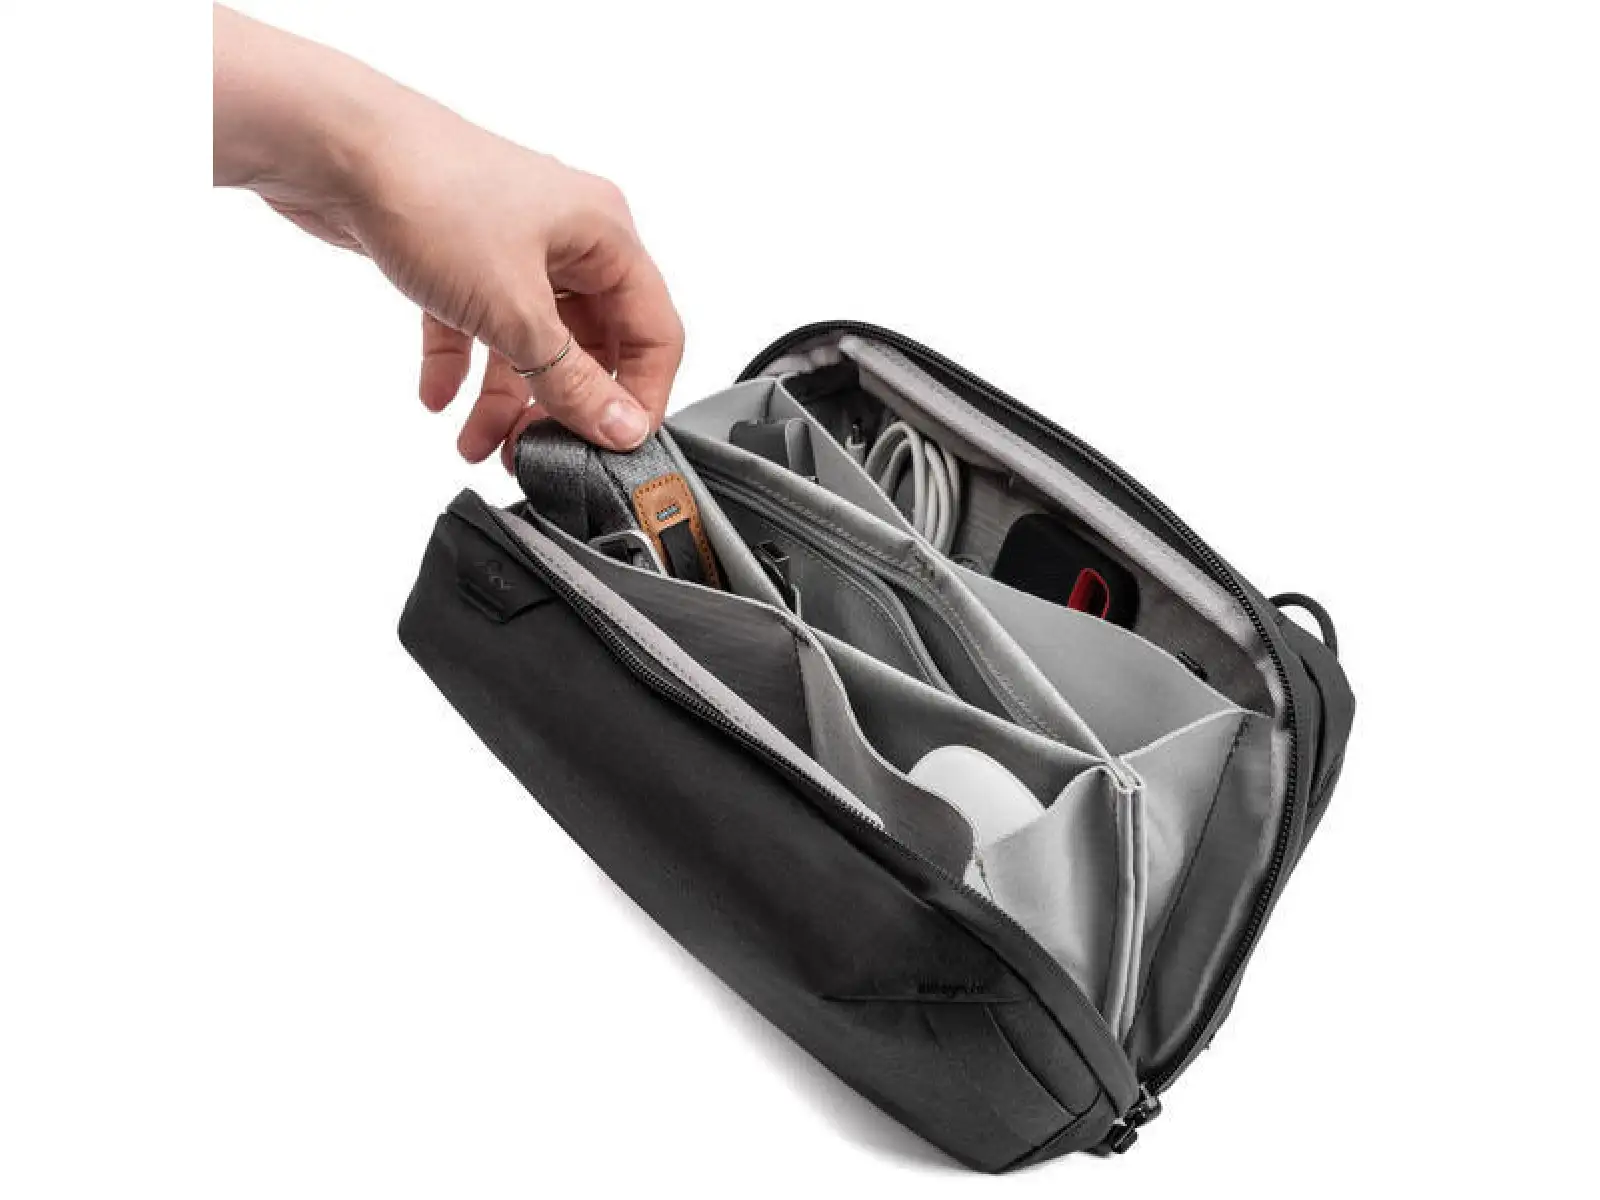 Peak Design Tech Pouch taška černá 2 l